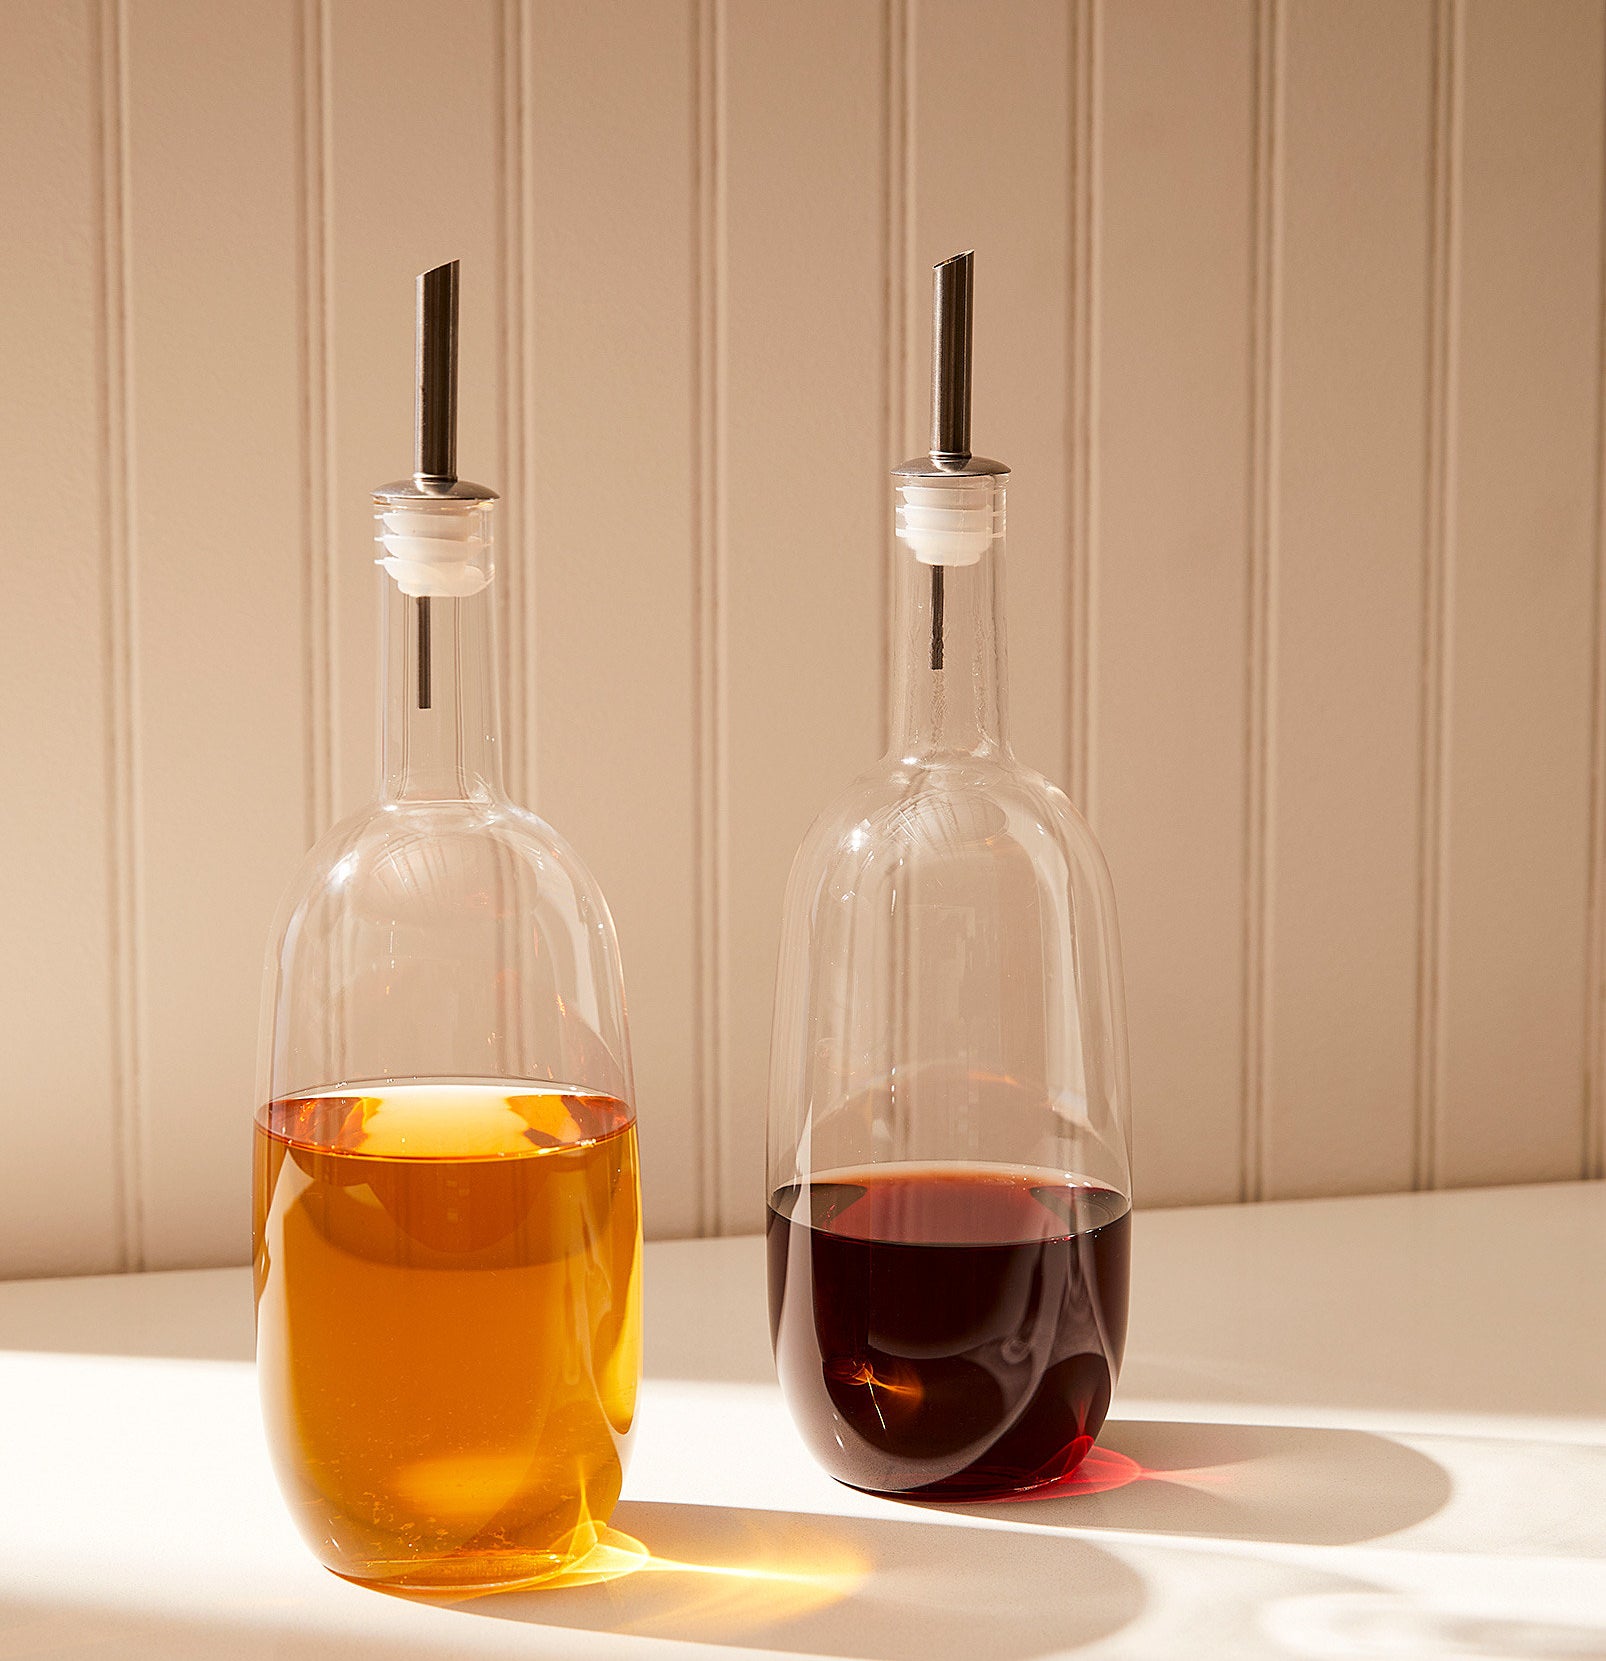 Oil and vinegar in the bottles